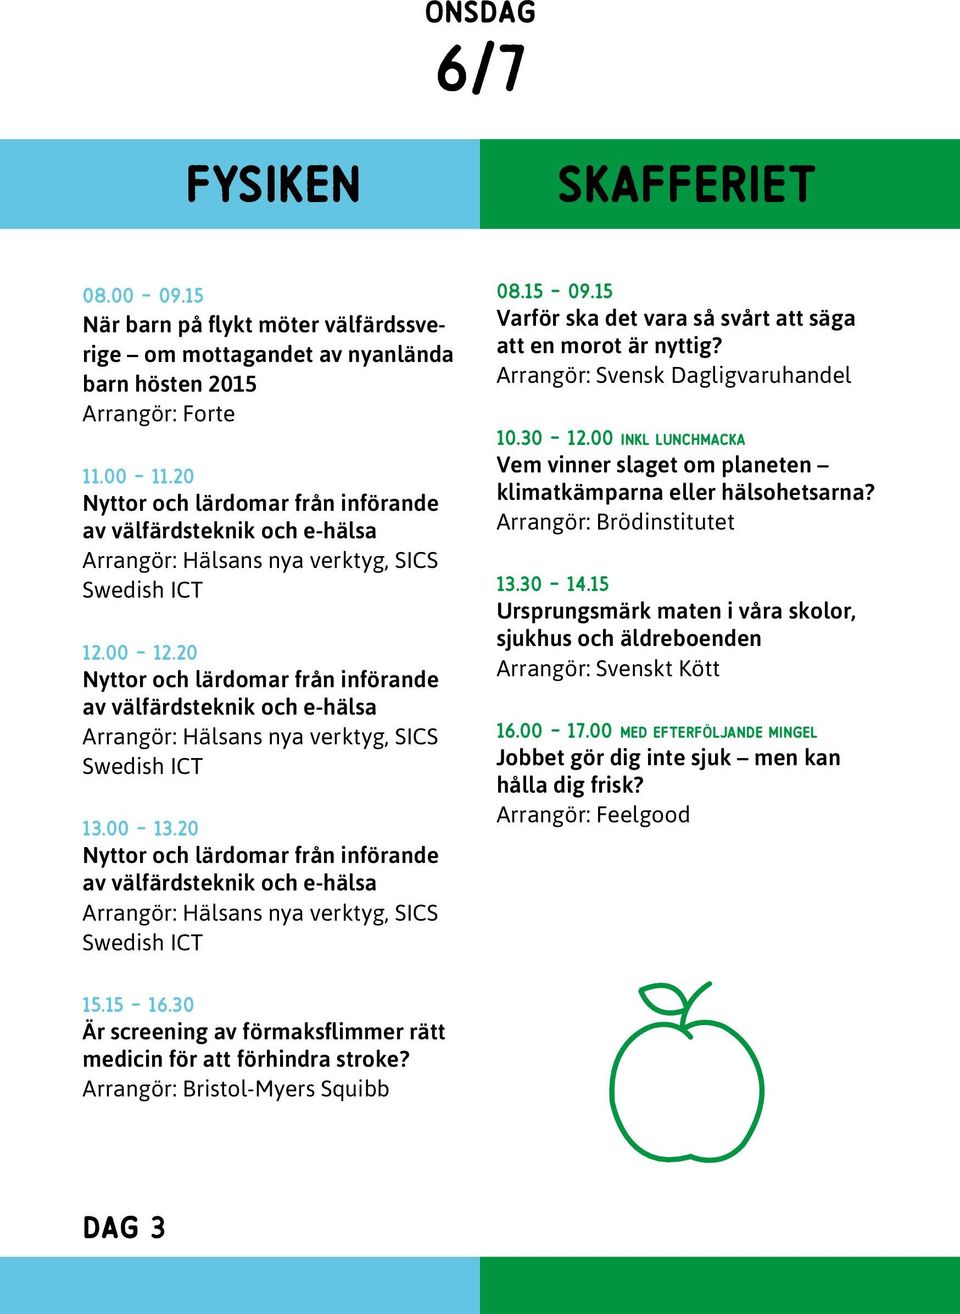 20 Nyttor och lärdomar från införande av välfärdsteknik och e-hälsa Arrangör: Hälsans nya verktyg, SICS Swedish ICT 13.00-13.